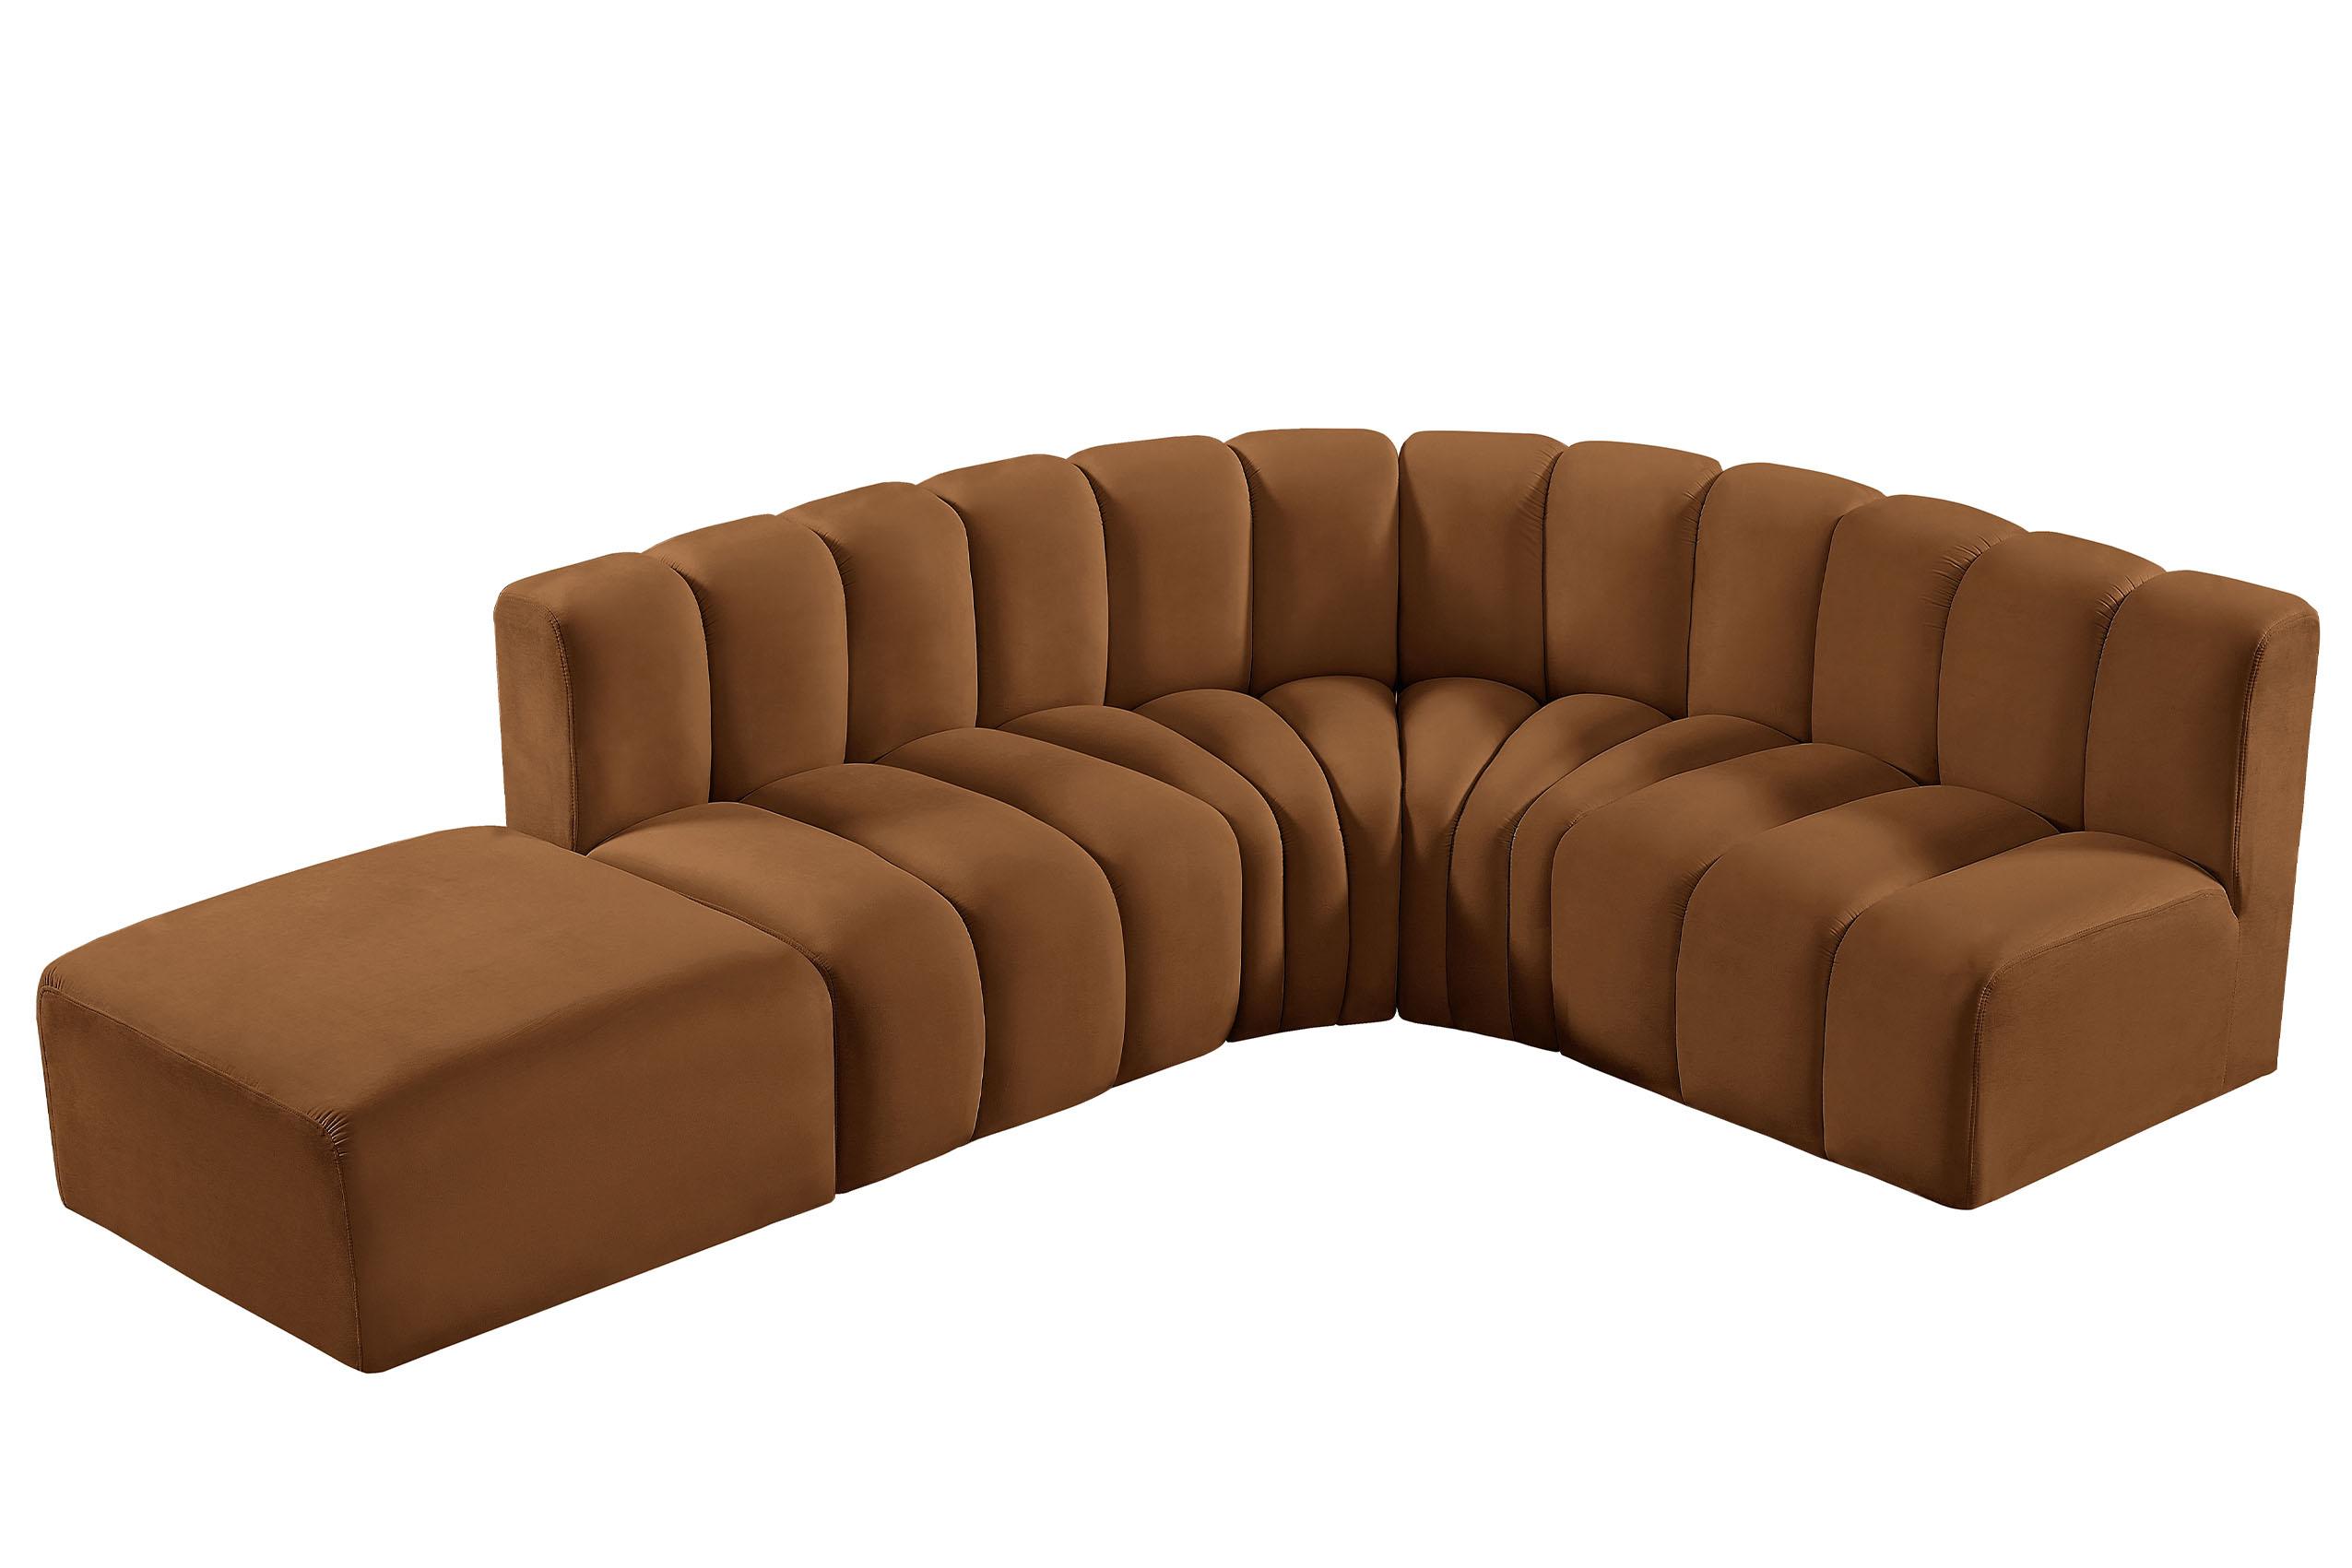 

    
103Saddle-S5C Meridian Furniture Modular Sectional Sofa
